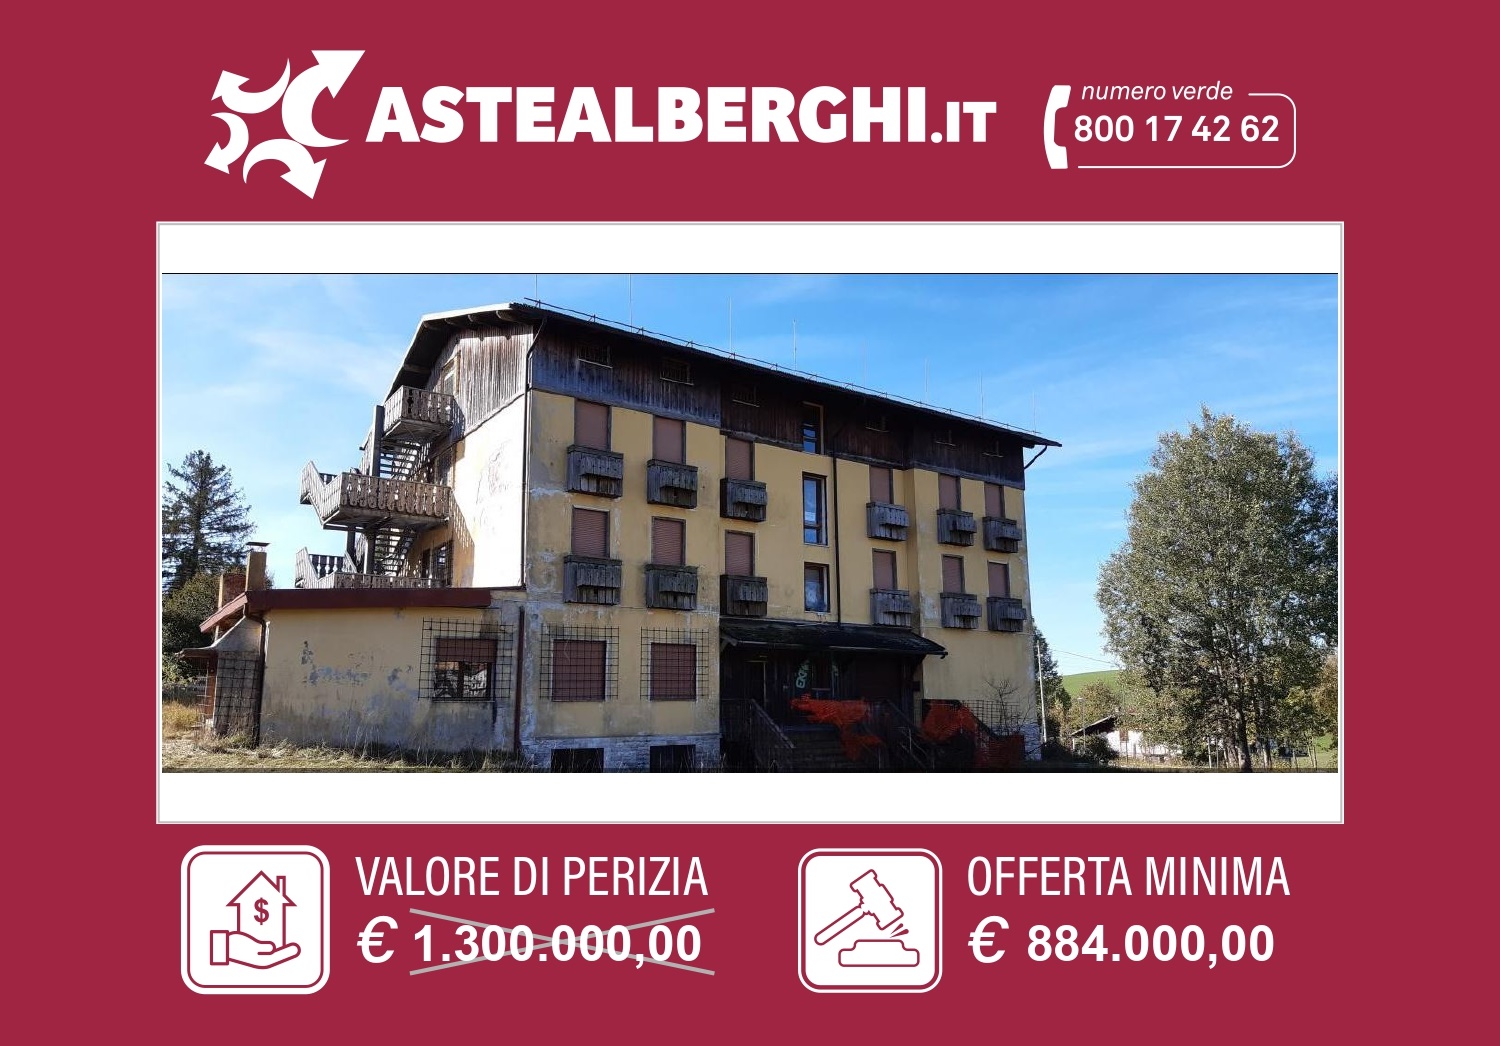 Albergo in vendita a Asiago, 38 locali, prezzo € 884.000 | PortaleAgenzieImmobiliari.it